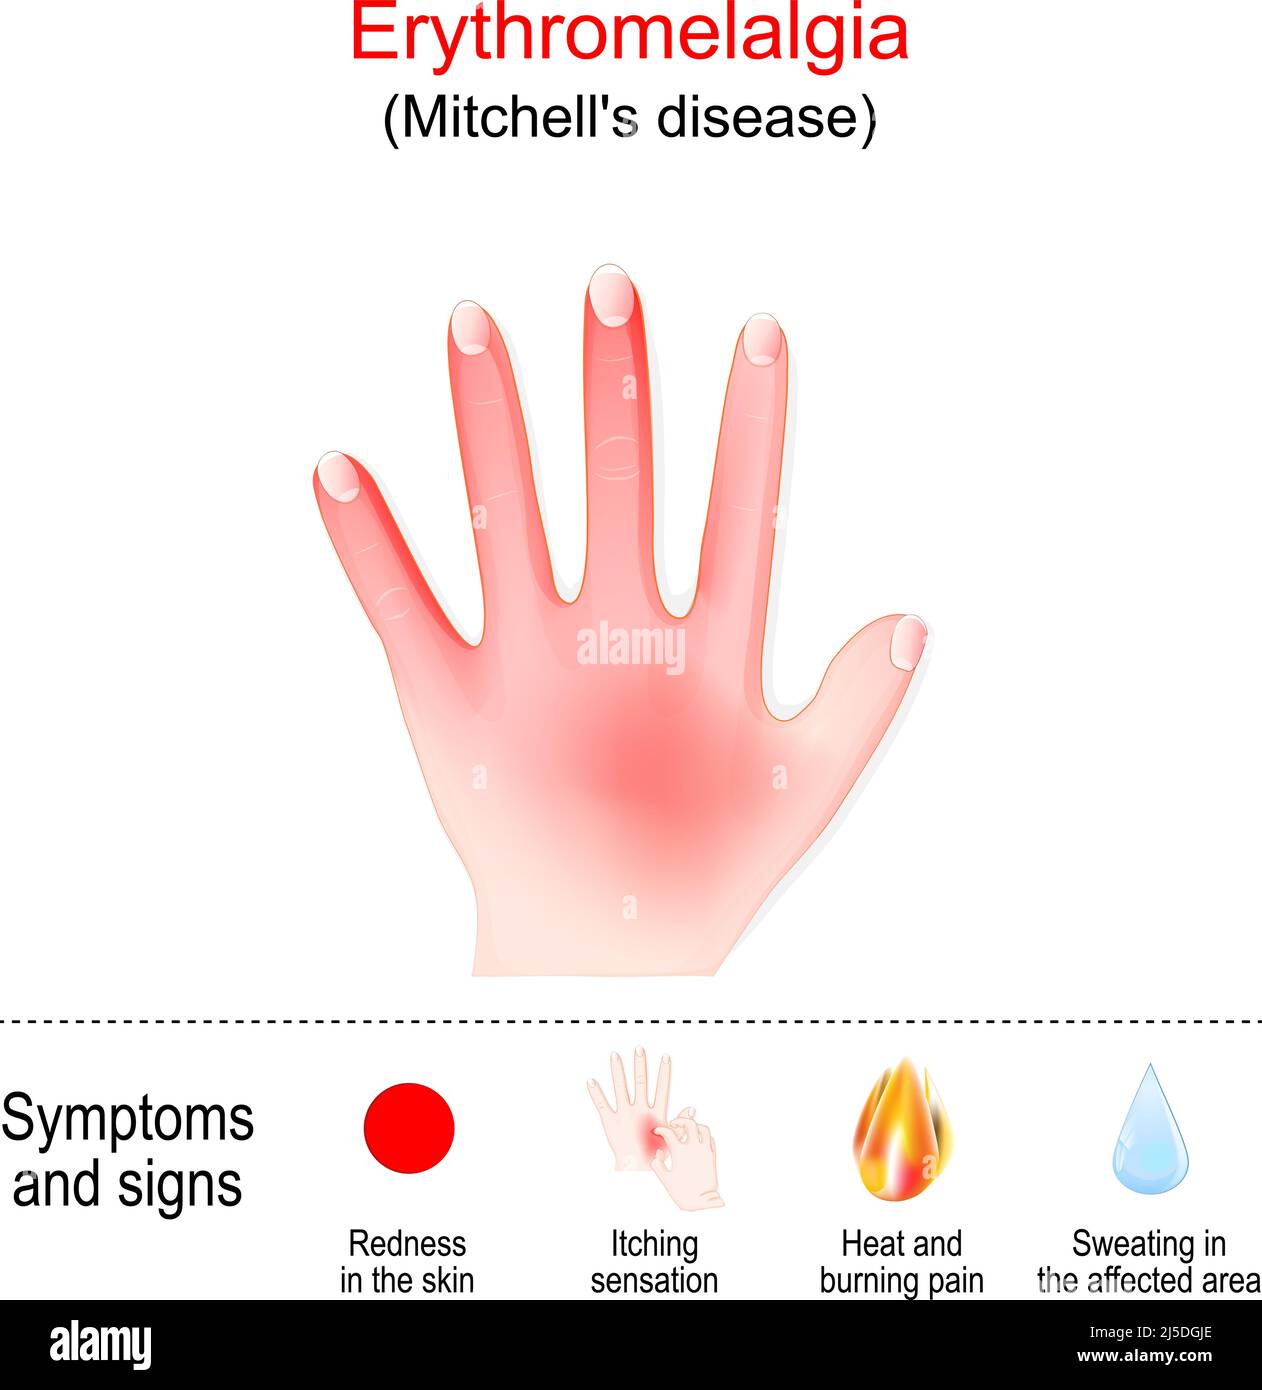 La eritromelalgia es una afección poco común que causa episodios de ardor en las manos y otras partes del cuerpo. La enfermedad de Mitchell en la izquierda ha Ilustración del Vector